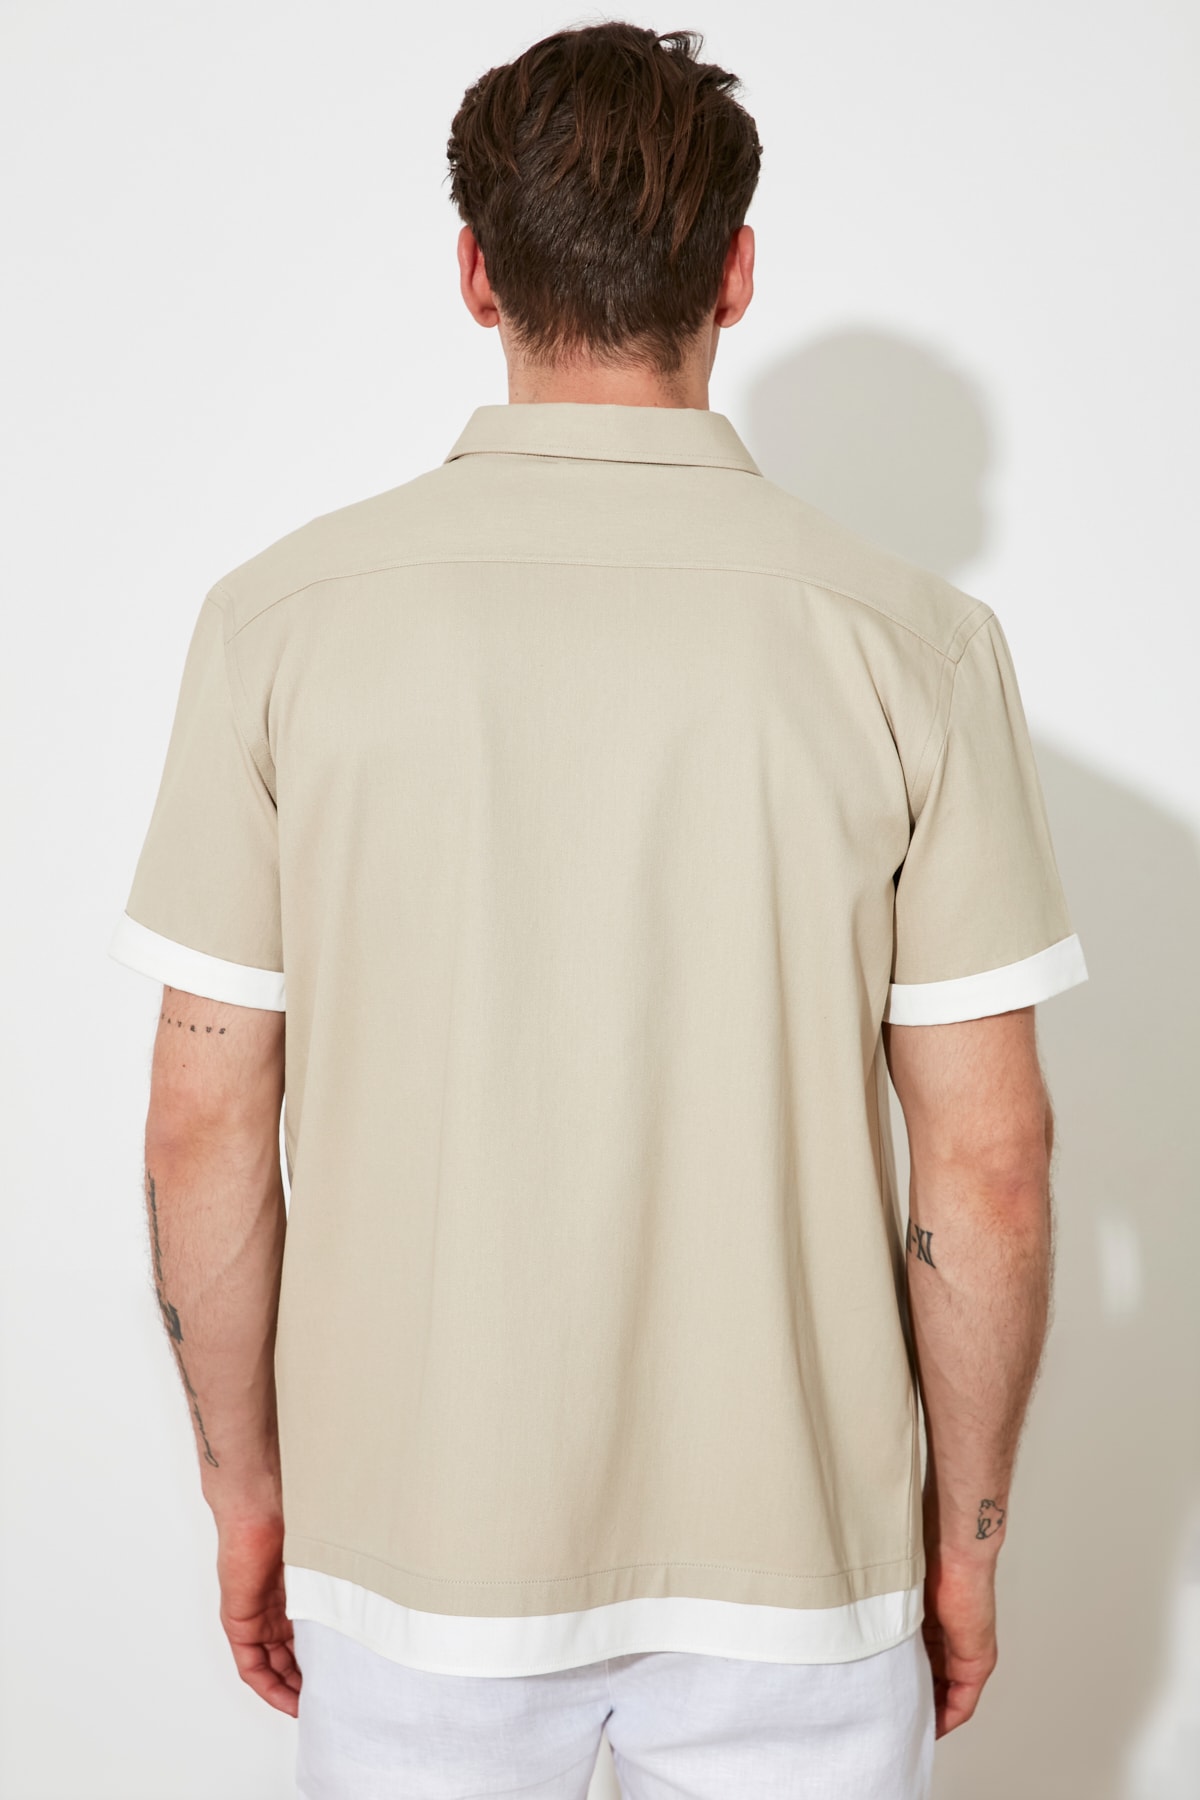 Men-s-Regular-Fit-shirt-collar-short-sleeve-pocket-shirt-TMNSS21GO1084-1.jpg